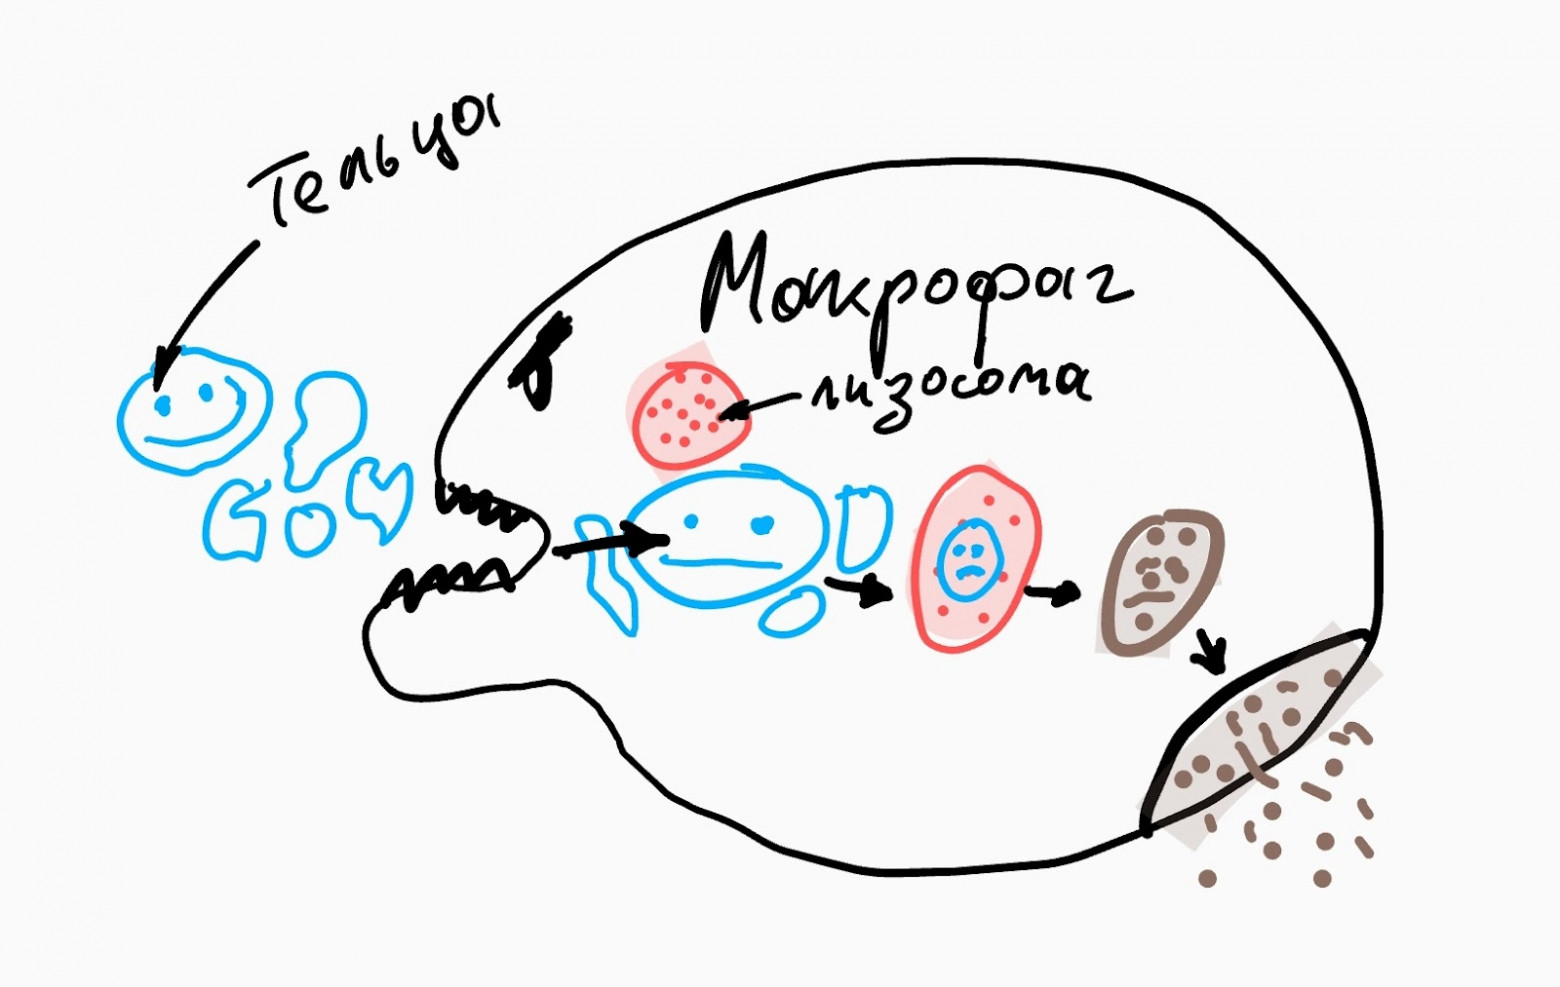 Суровый макрофаг кушает остатки клетки после апоптоза.